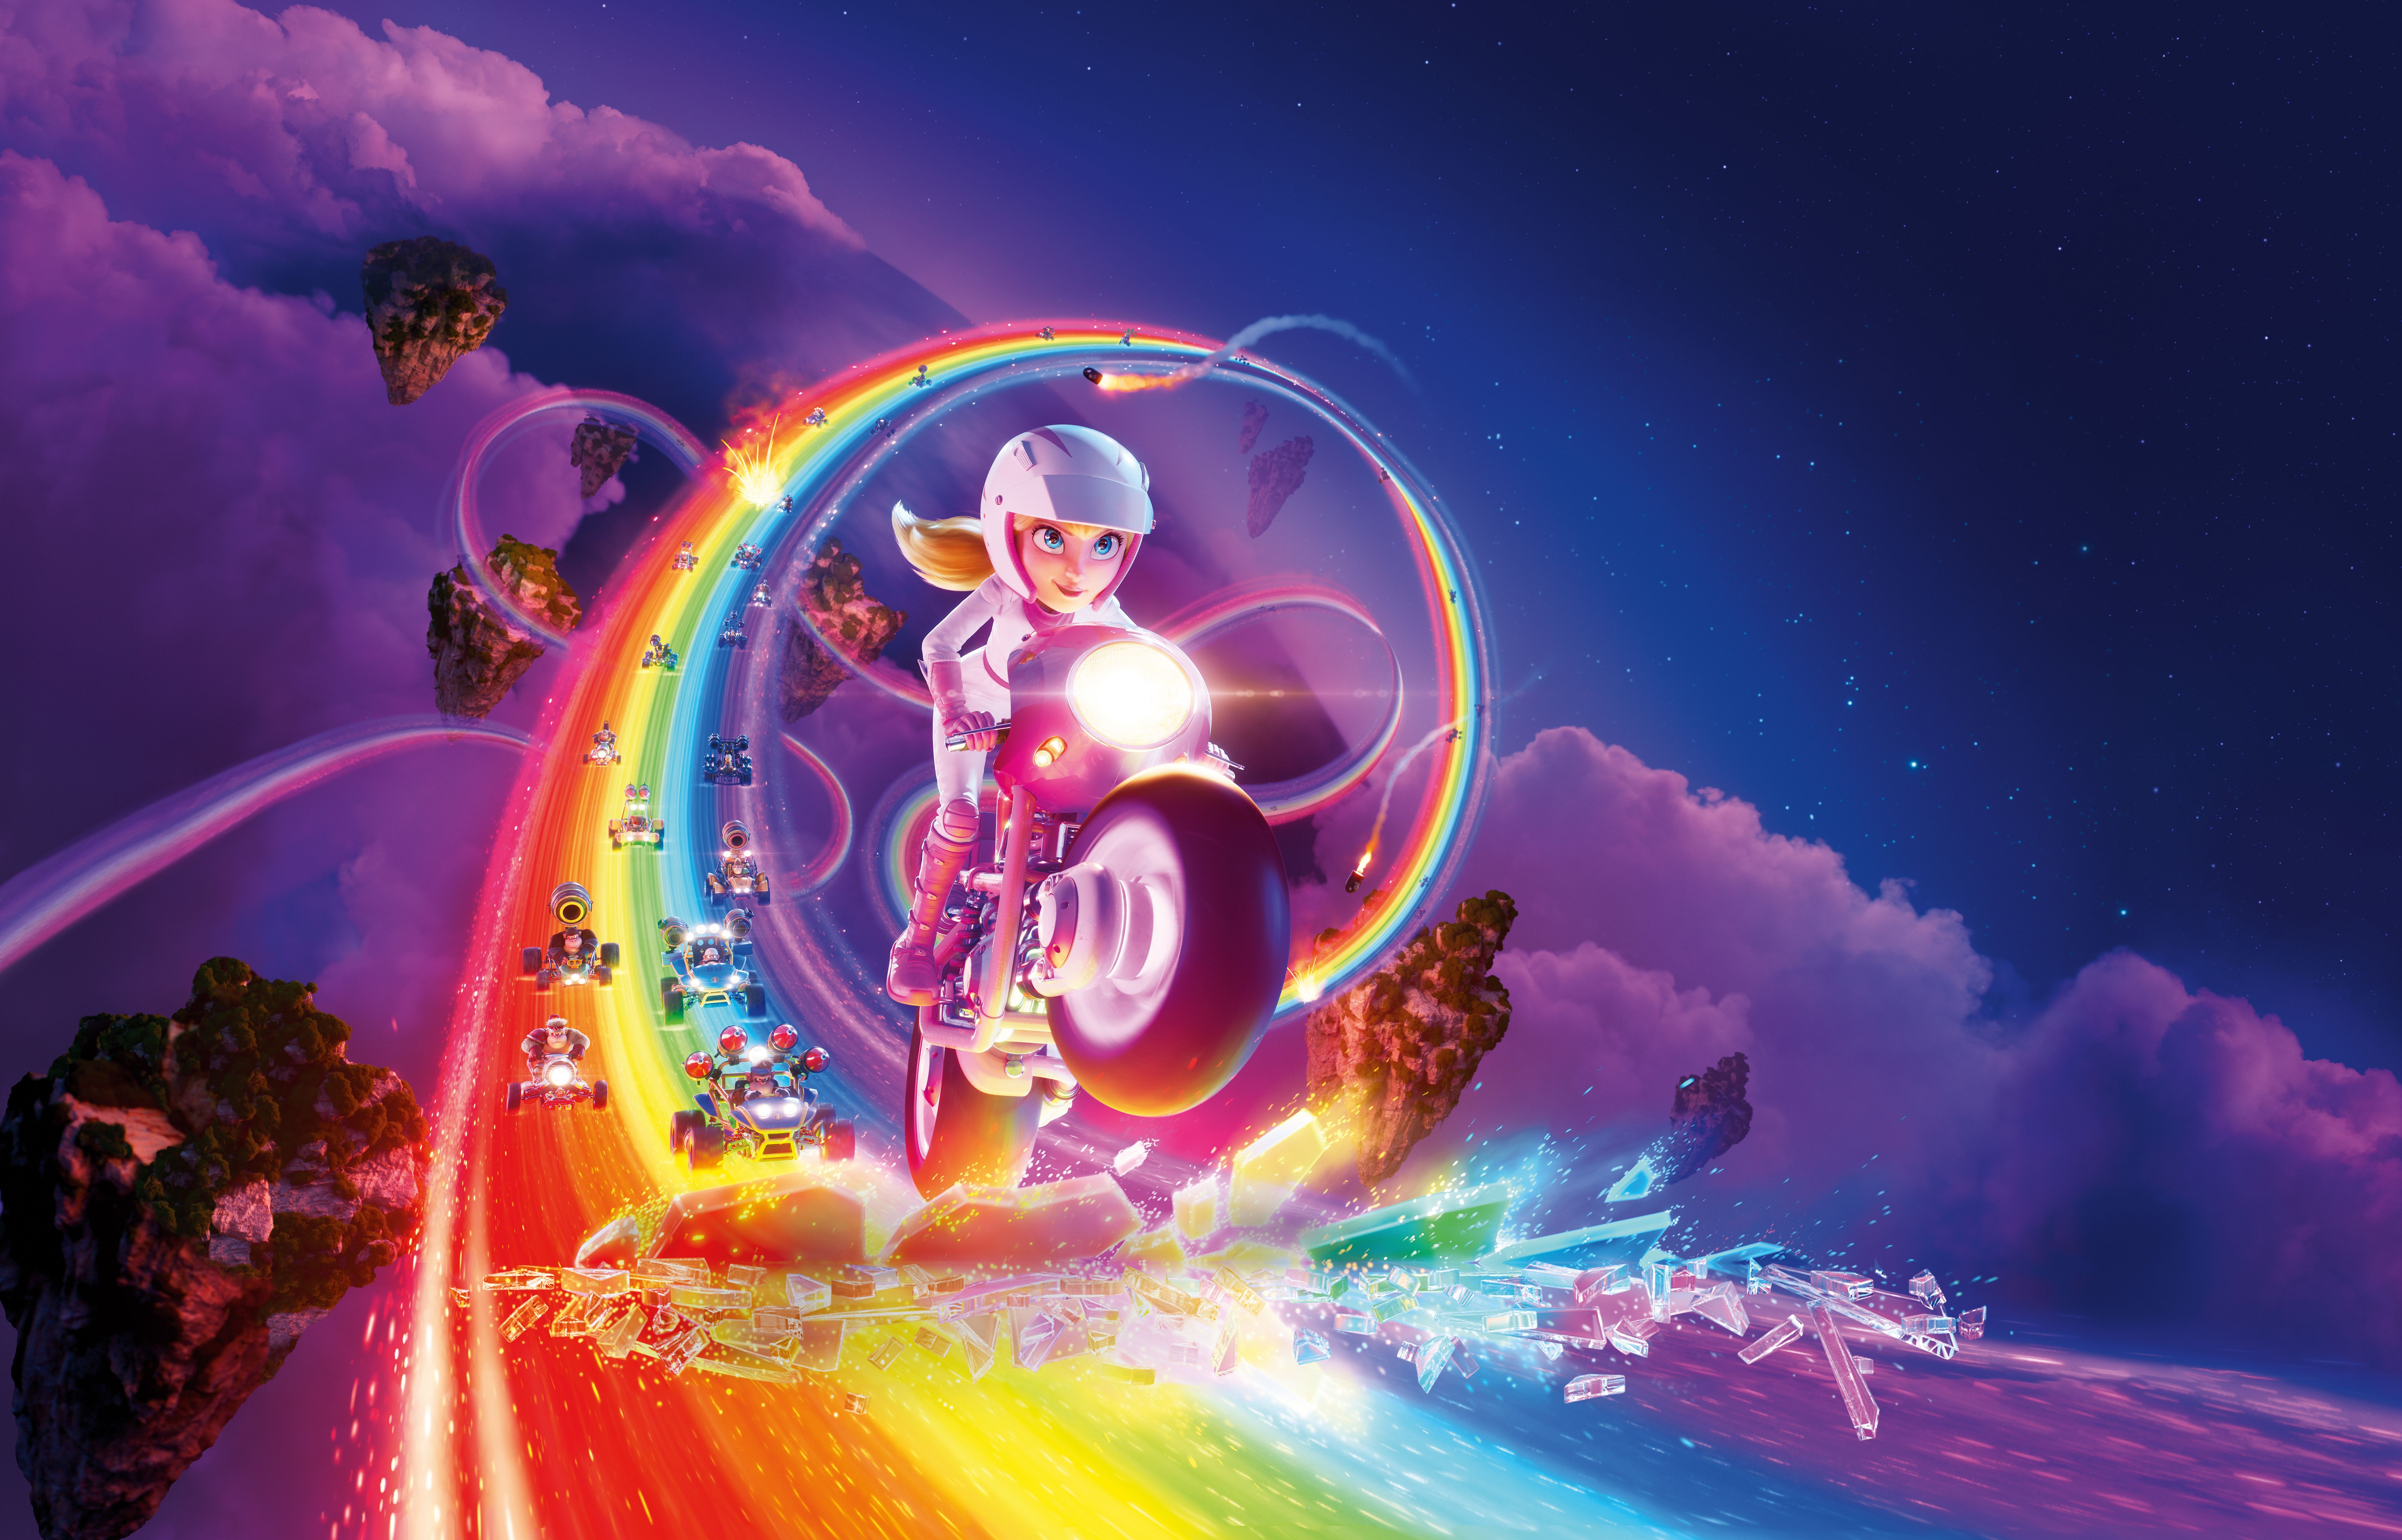 A girl rides a motorcycle through a rainbow in the sky. - Super Mario